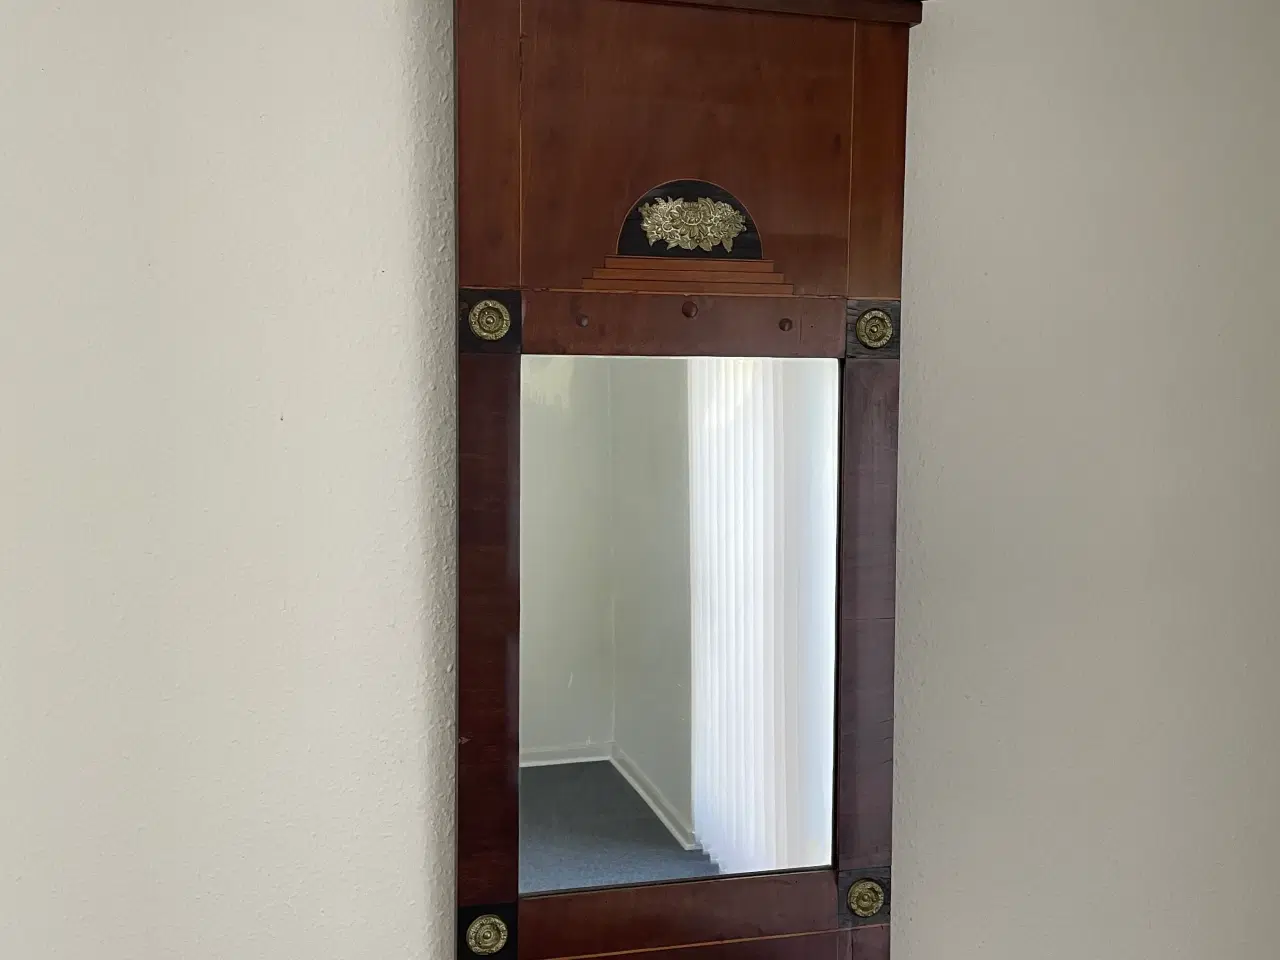 Billede 1 - Antikt spejl